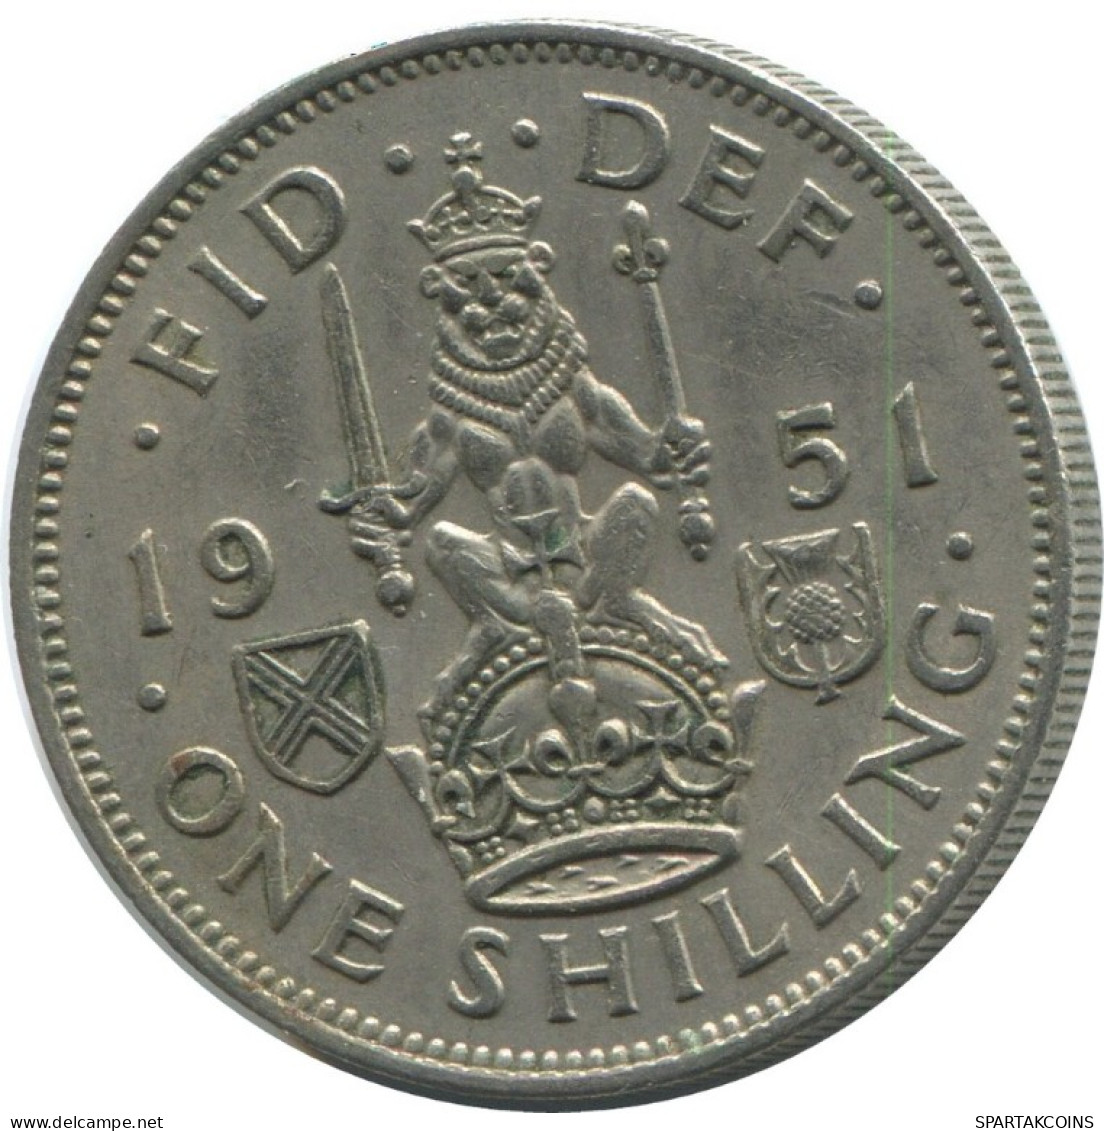 SHILLING 1951 UK GROßBRITANNIEN GREAT BRITAIN Münze #AG980.1.D.A - I. 1 Shilling